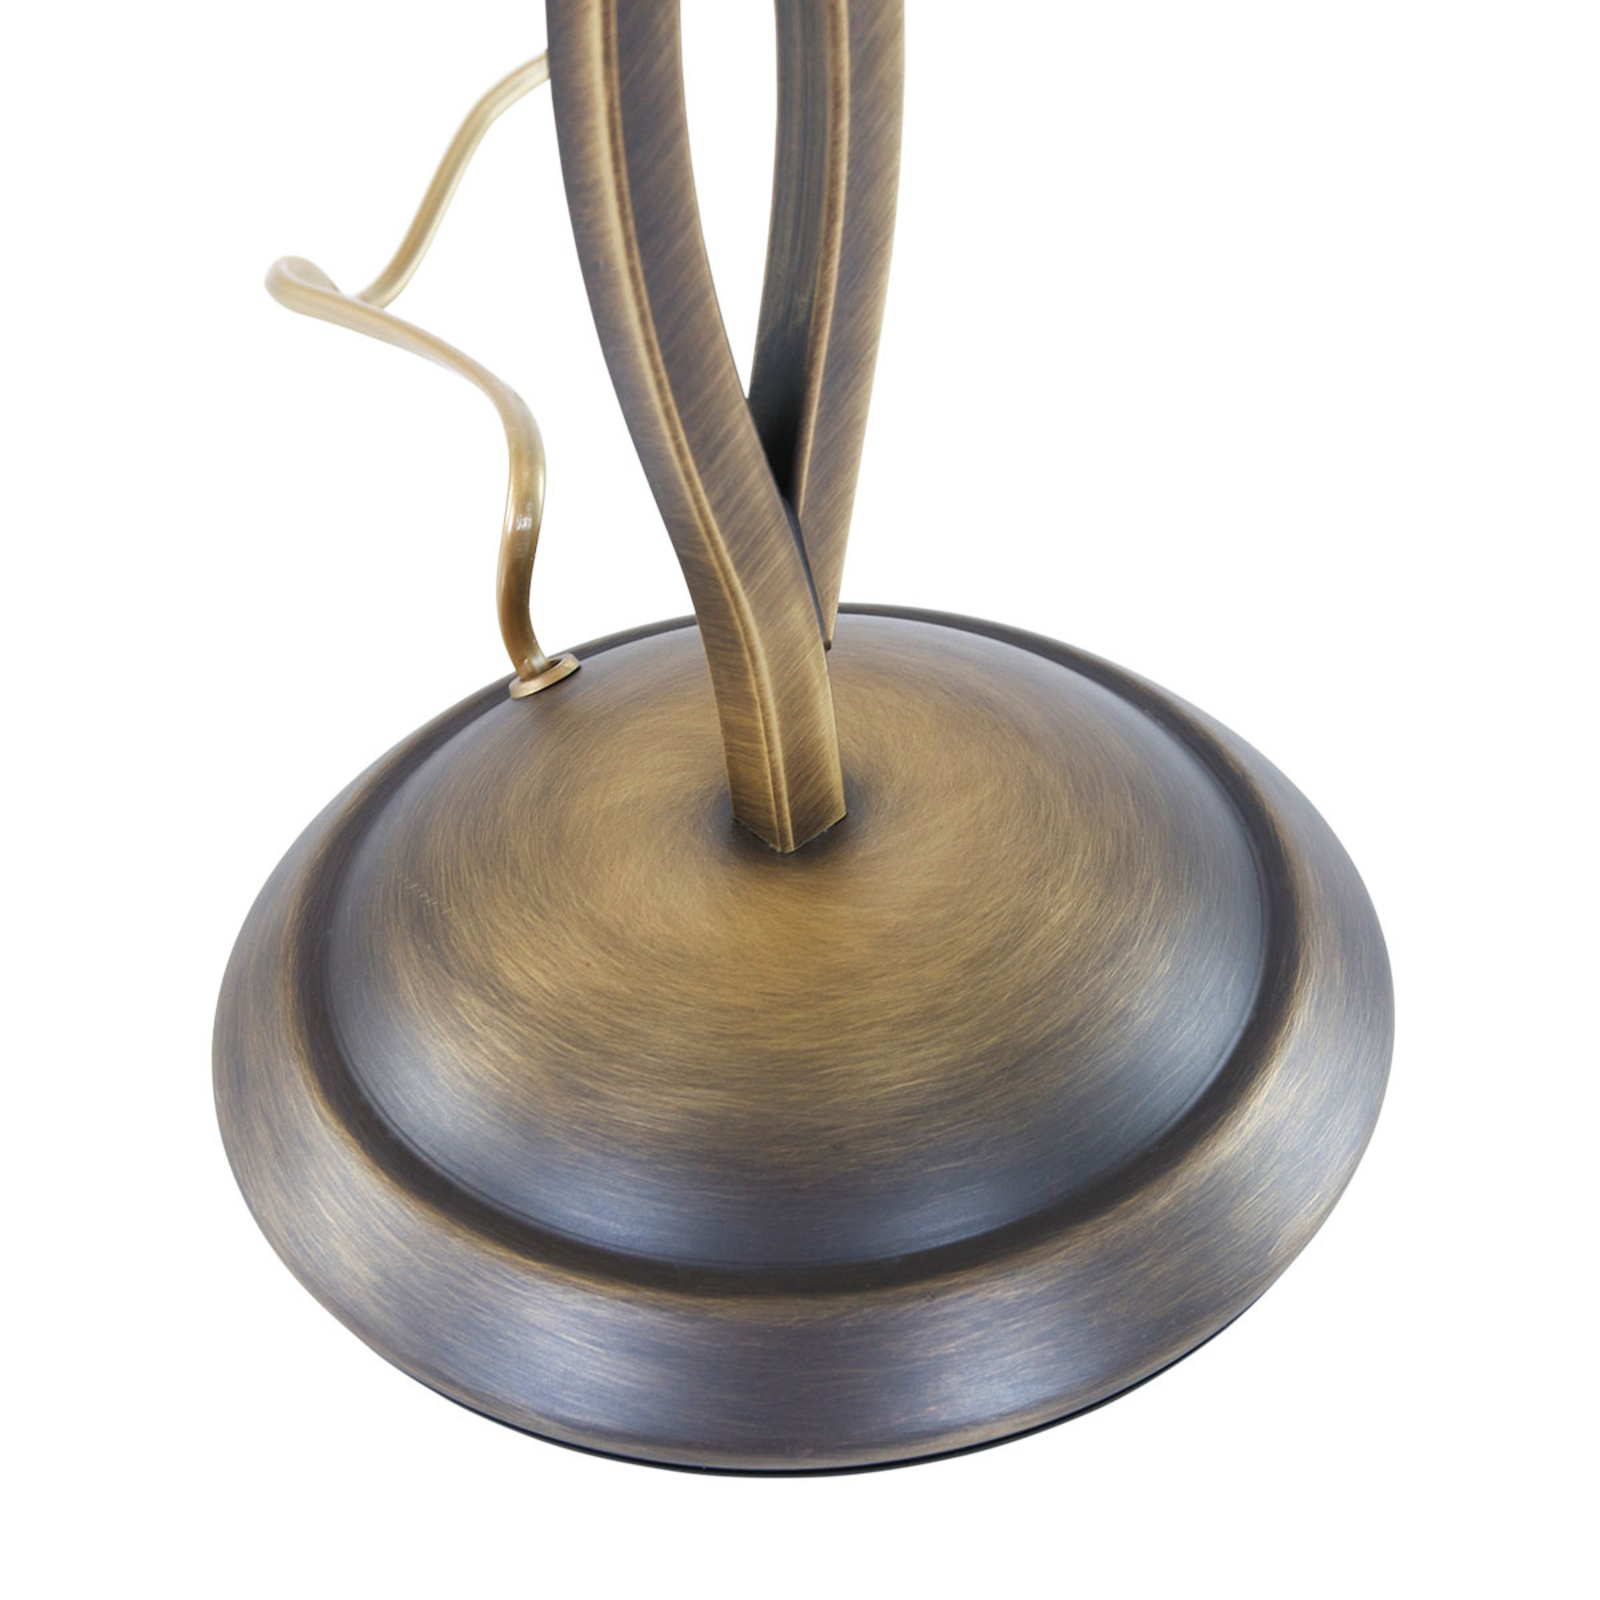 Stolní lampa Capri výška 45 cm krémová/bronz